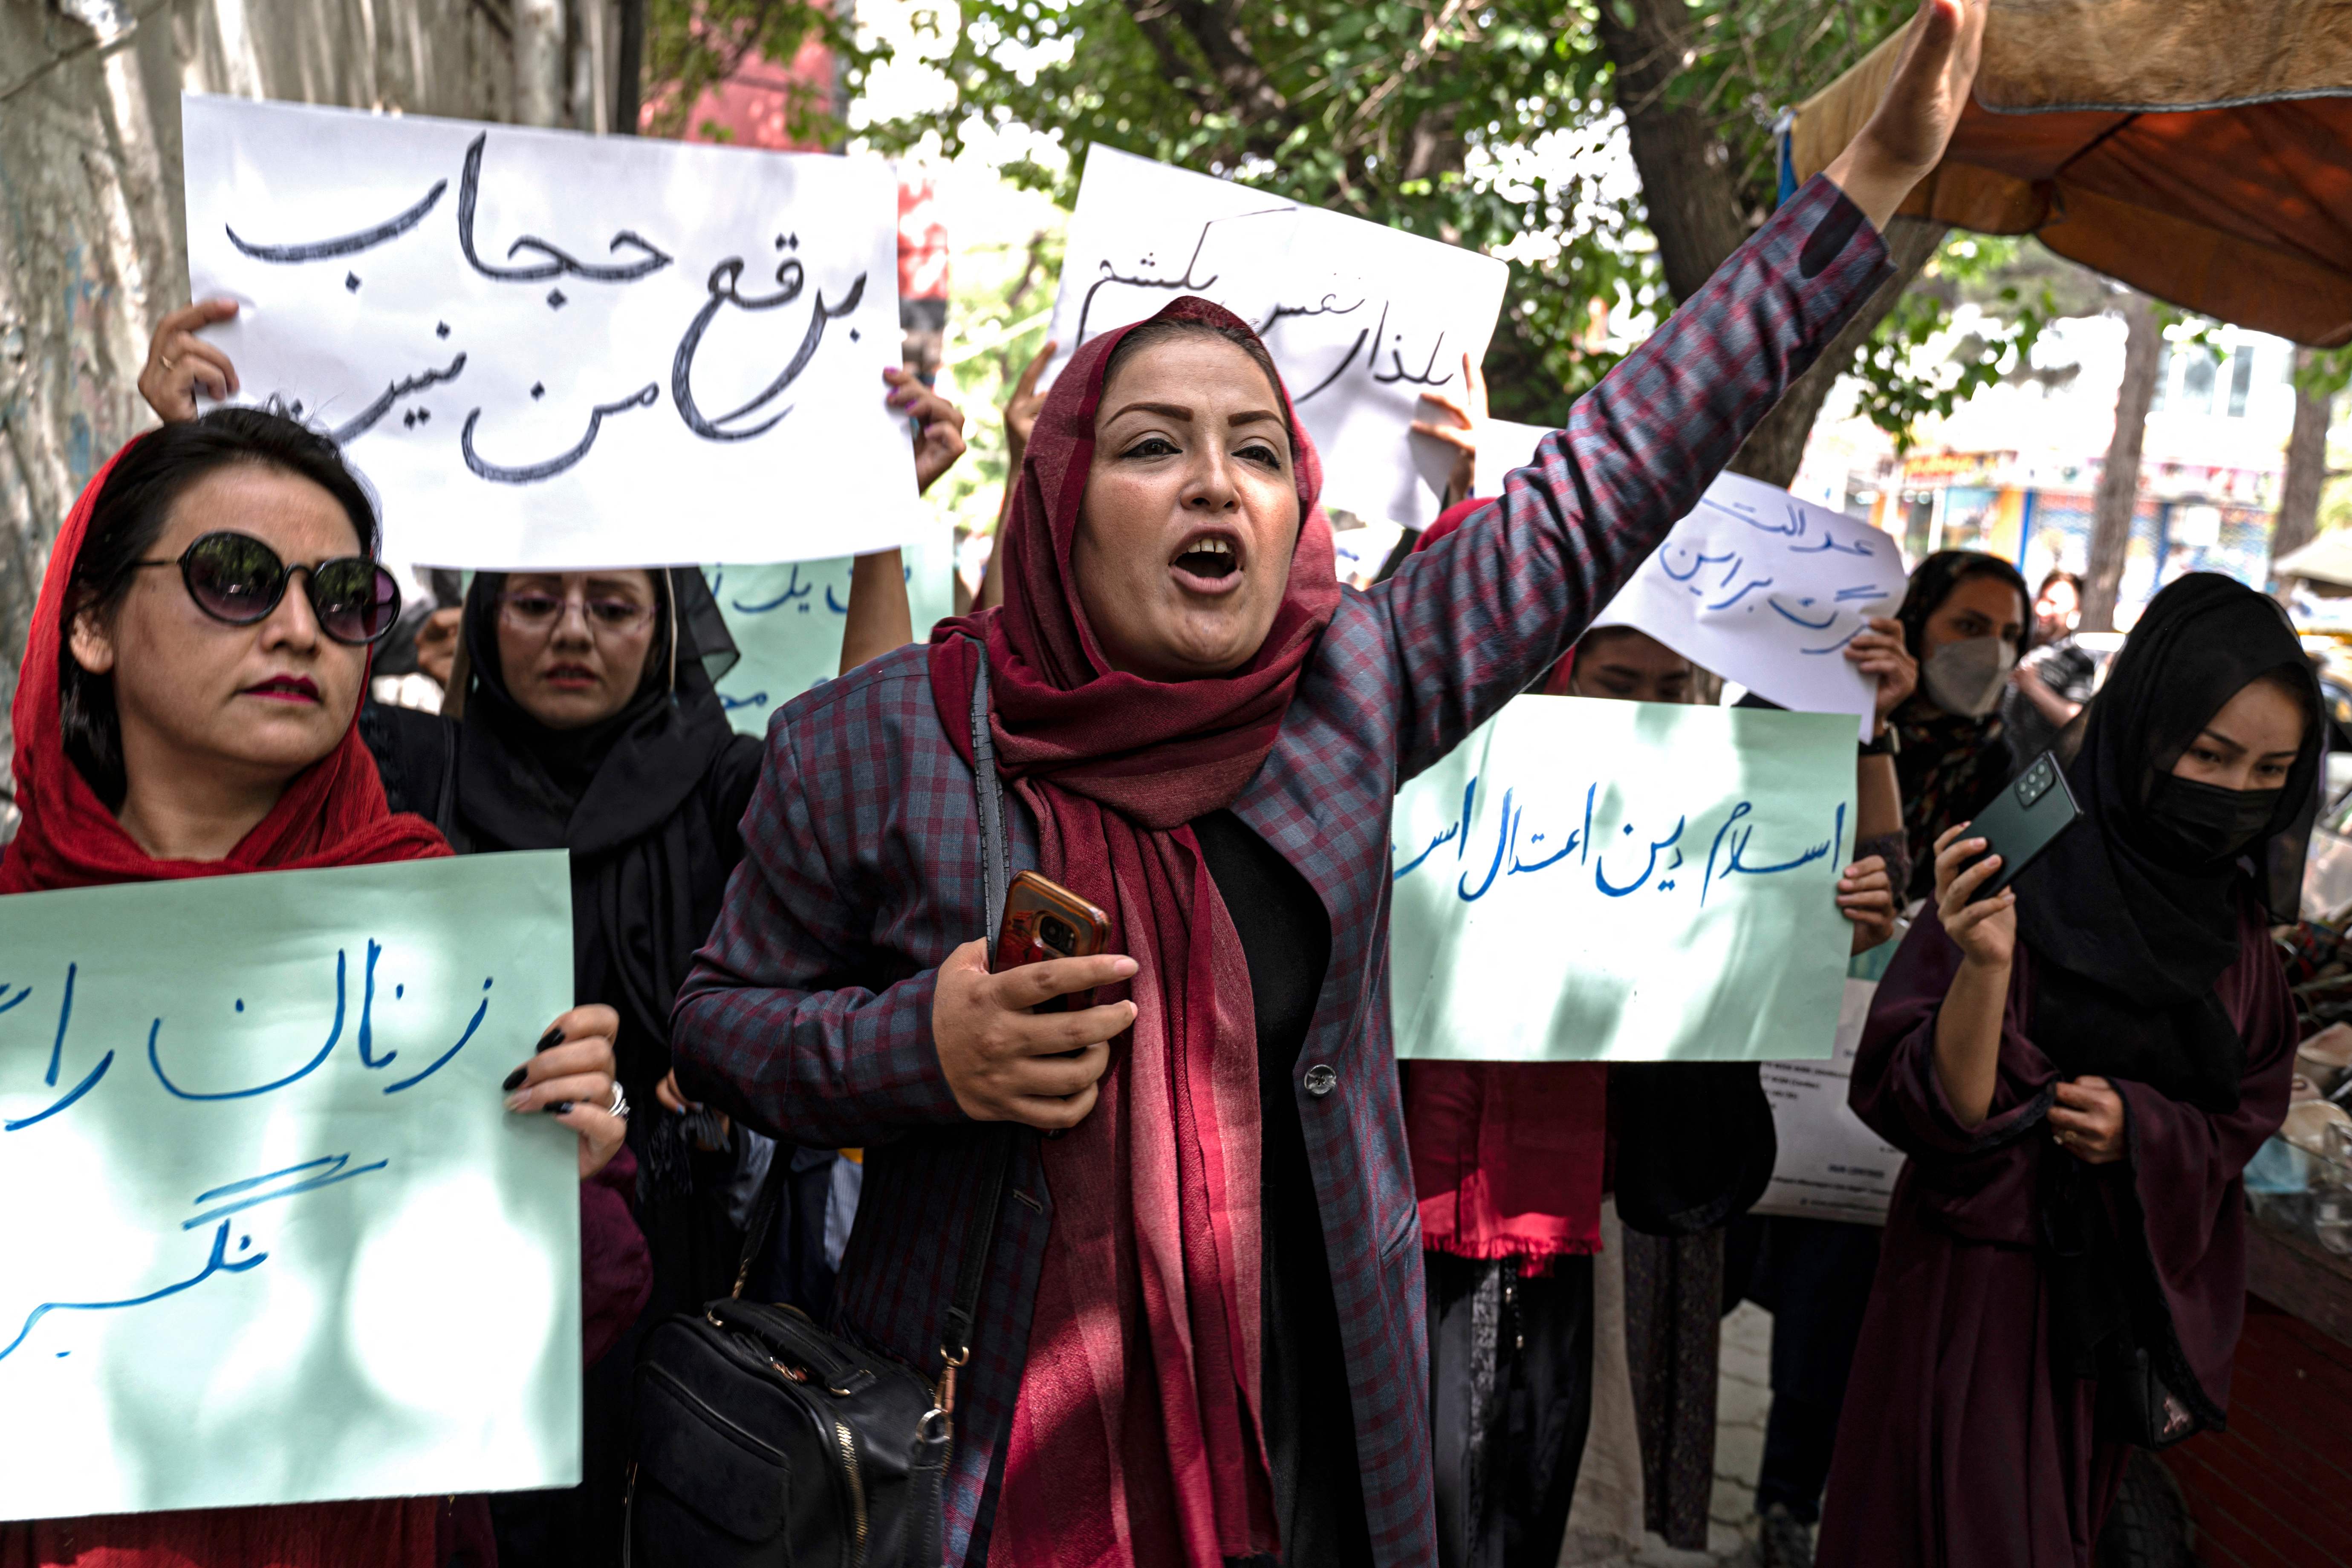 Integrantes del Movimiento de Mujeres Poderosas de Afganistán, participan en una protesta en Kabul el 10 de mayo de 2022. (Foto Prensa Libre: WAKIL KOHSAR / AFP)